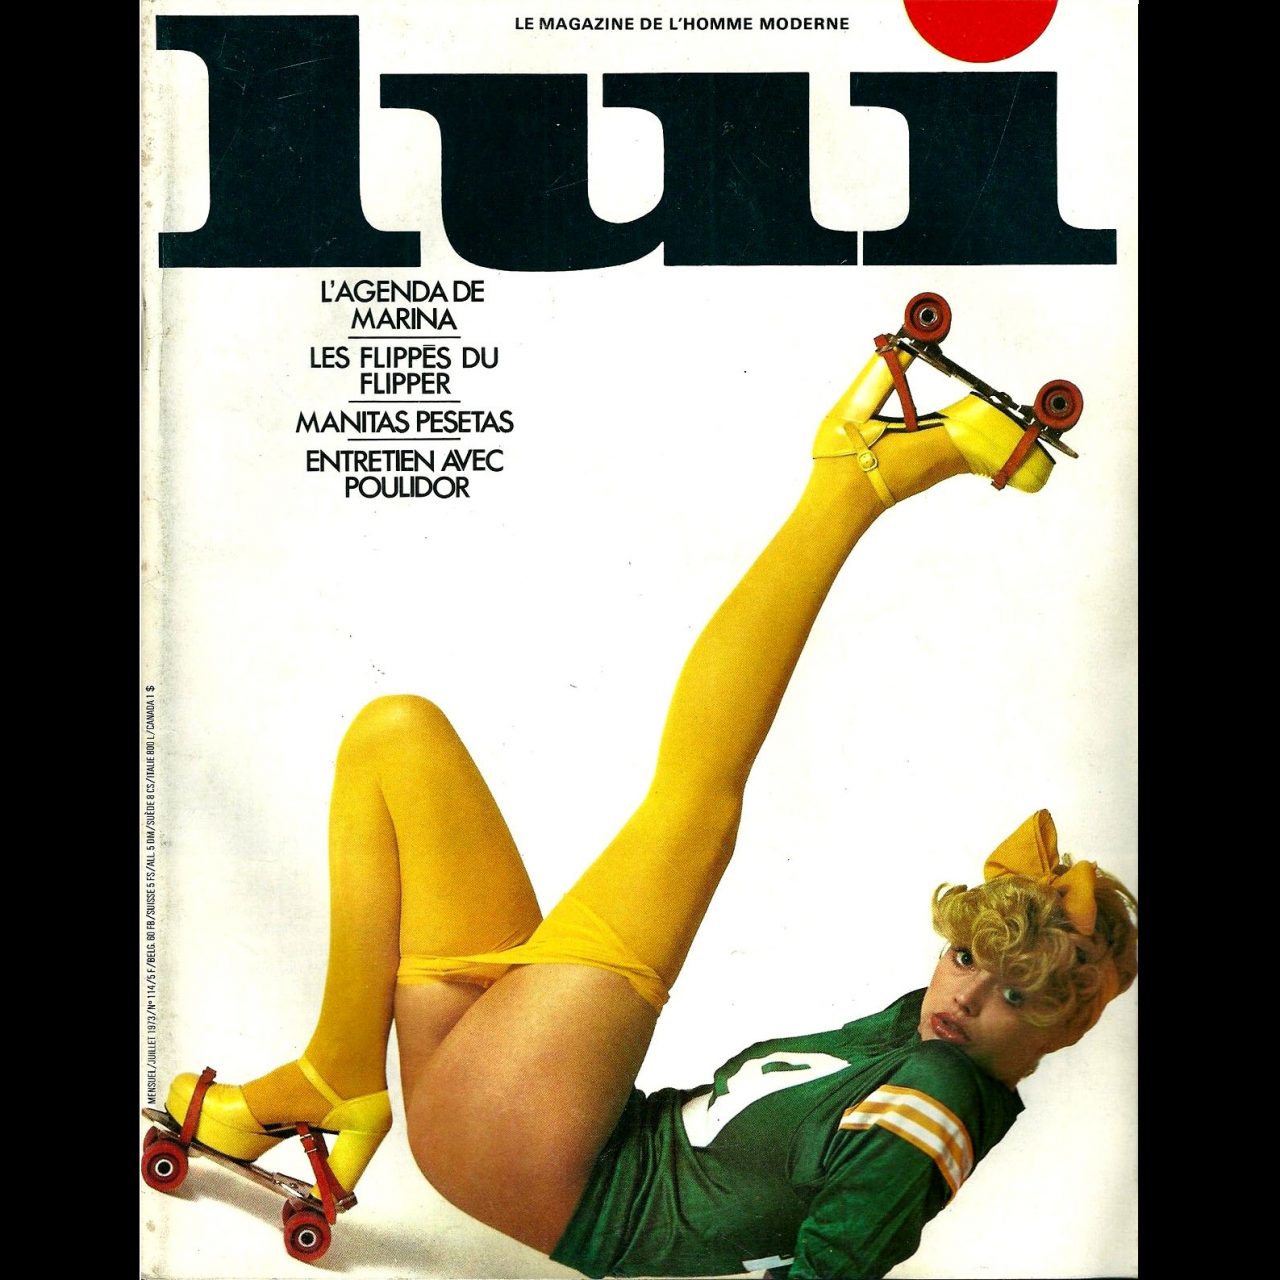 hustler magazine covers for 1979